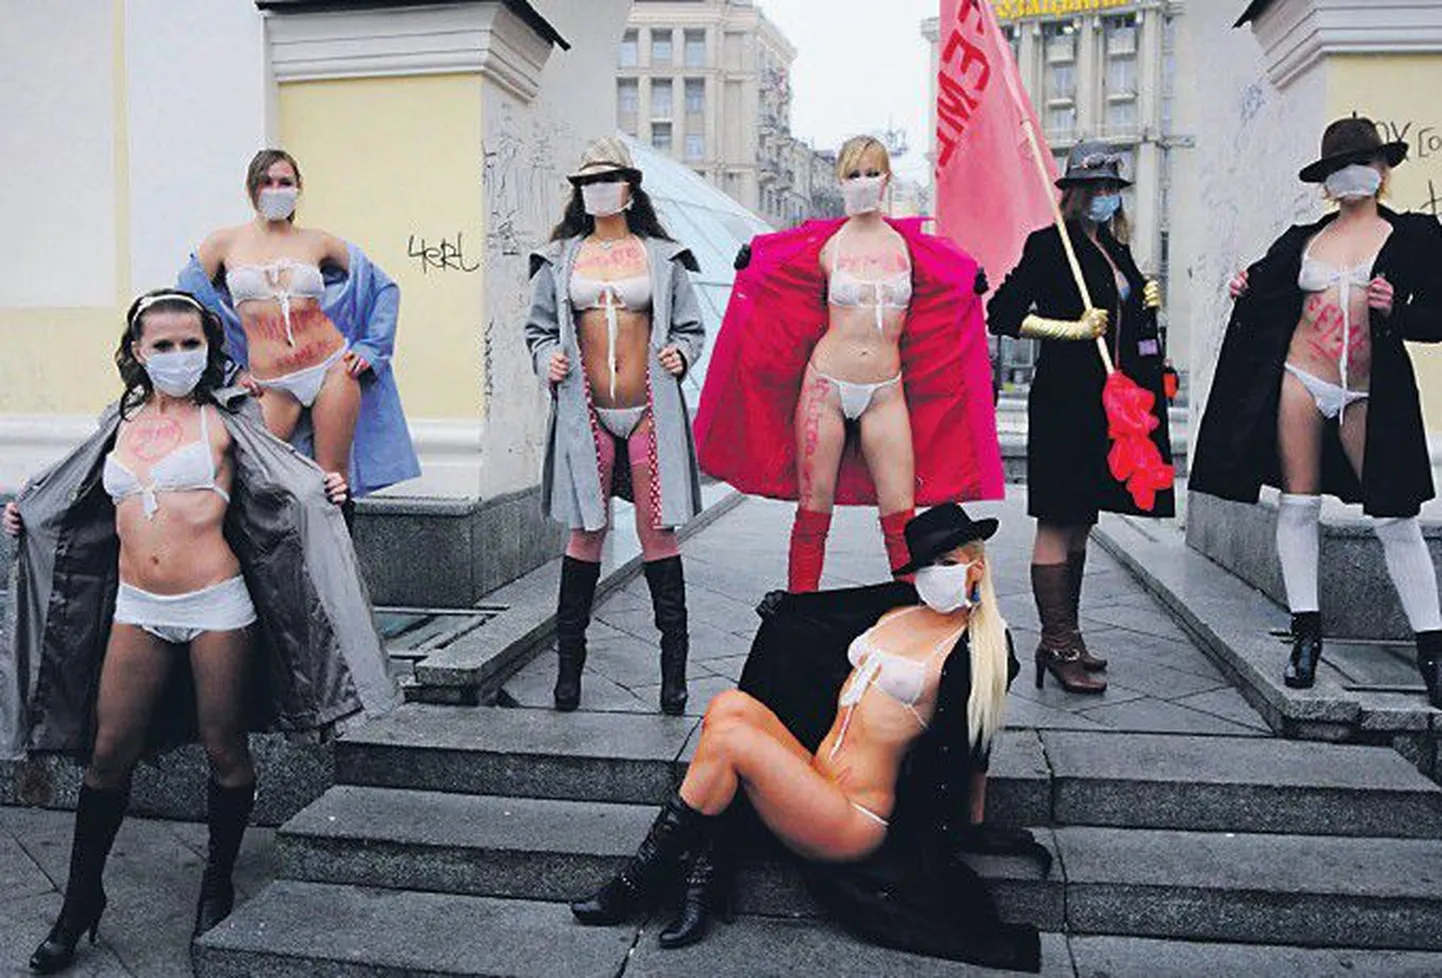 Группа феминисток FEMEN подошла к защитным маскам творчески и сконструировала из них женское белье, которое и было продемонстрировано народу на Майдане Незалежности для поднятия настроения.